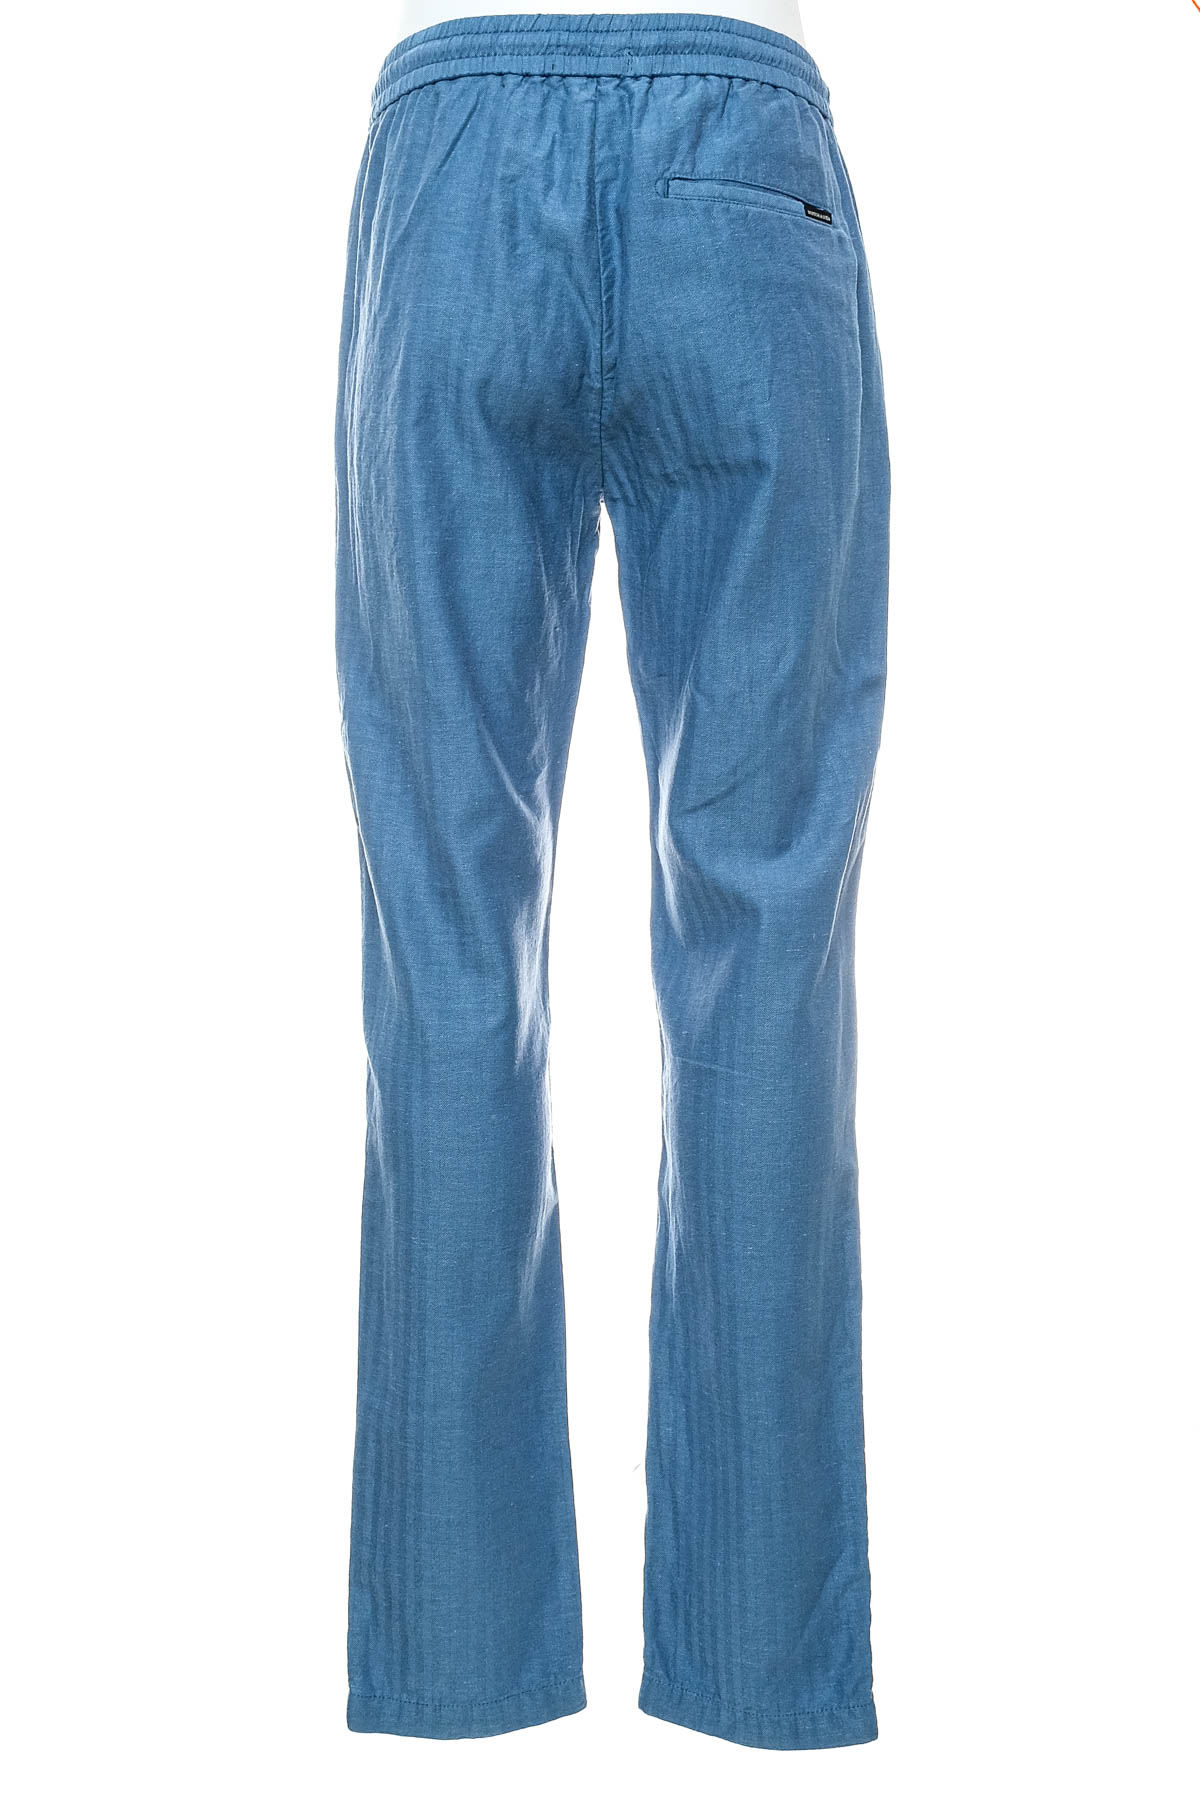 Pantalon pentru bărbați - SCOTCH & SODA - 1